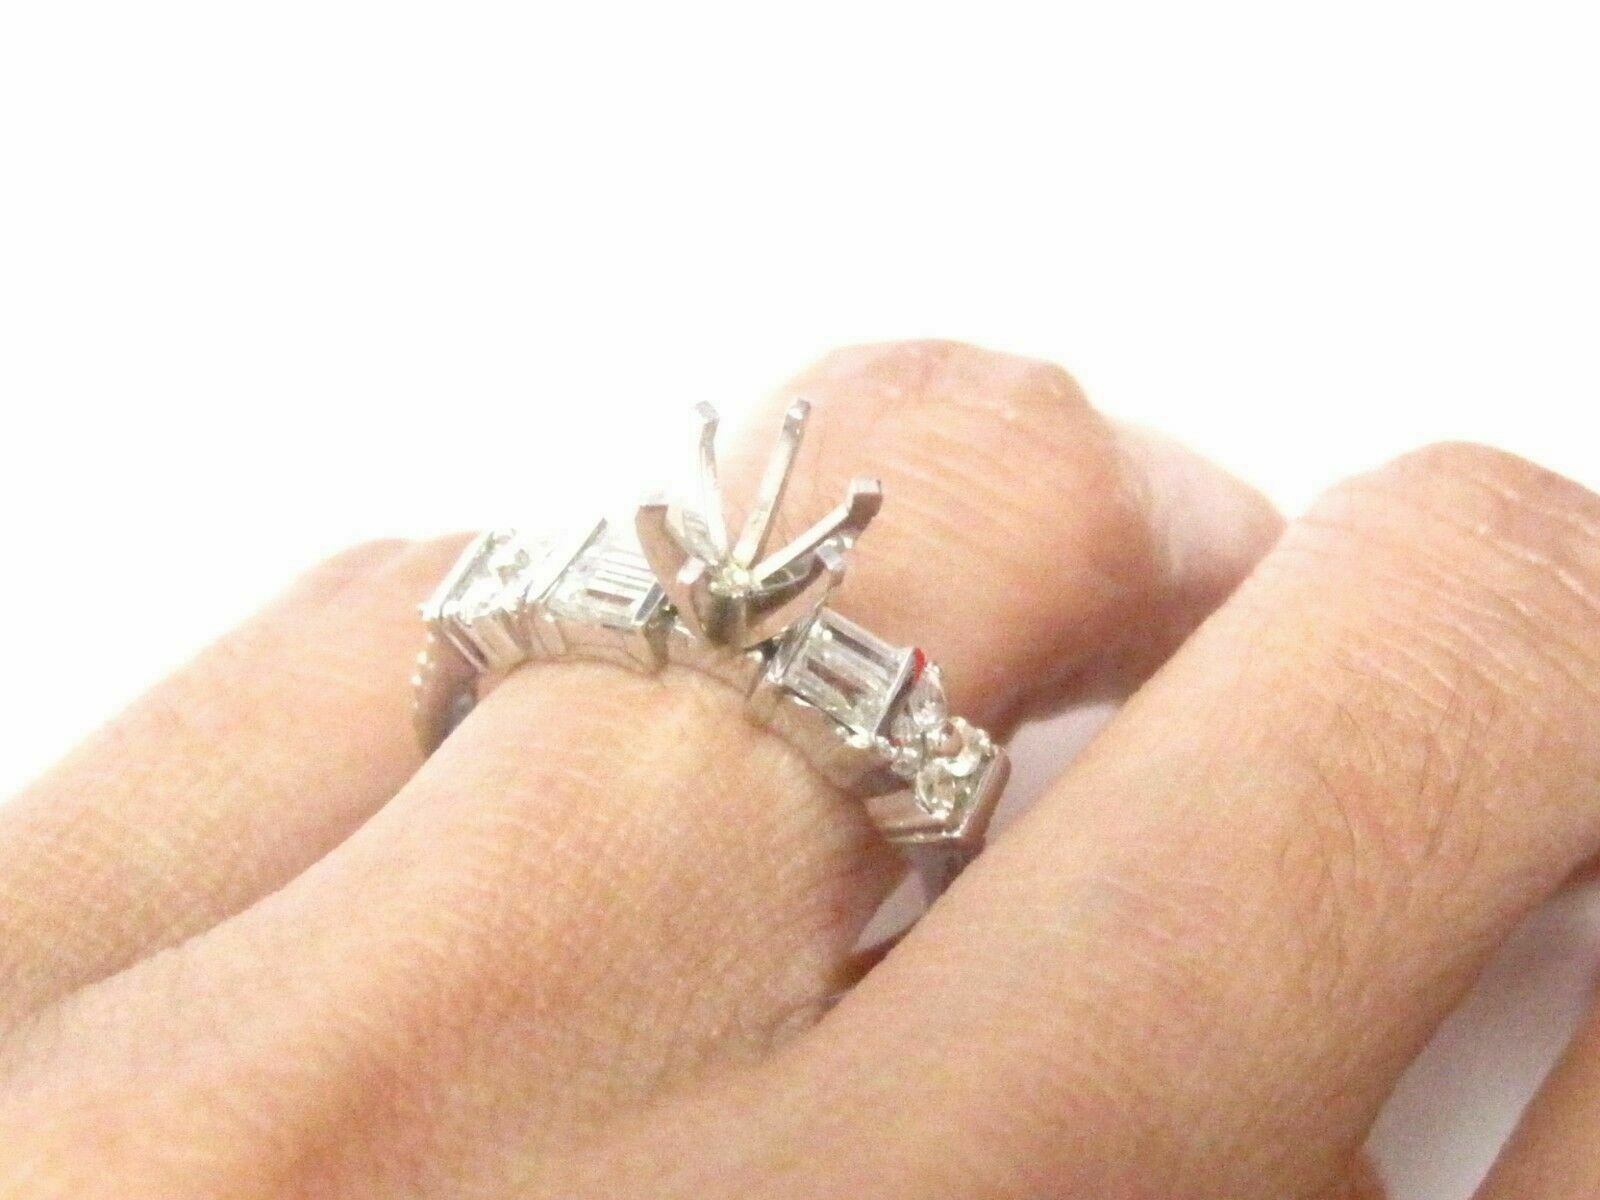 Fine Semi-Mounting Round Diamond Ring Wedding Set Size7 G SI1 14k White Gold